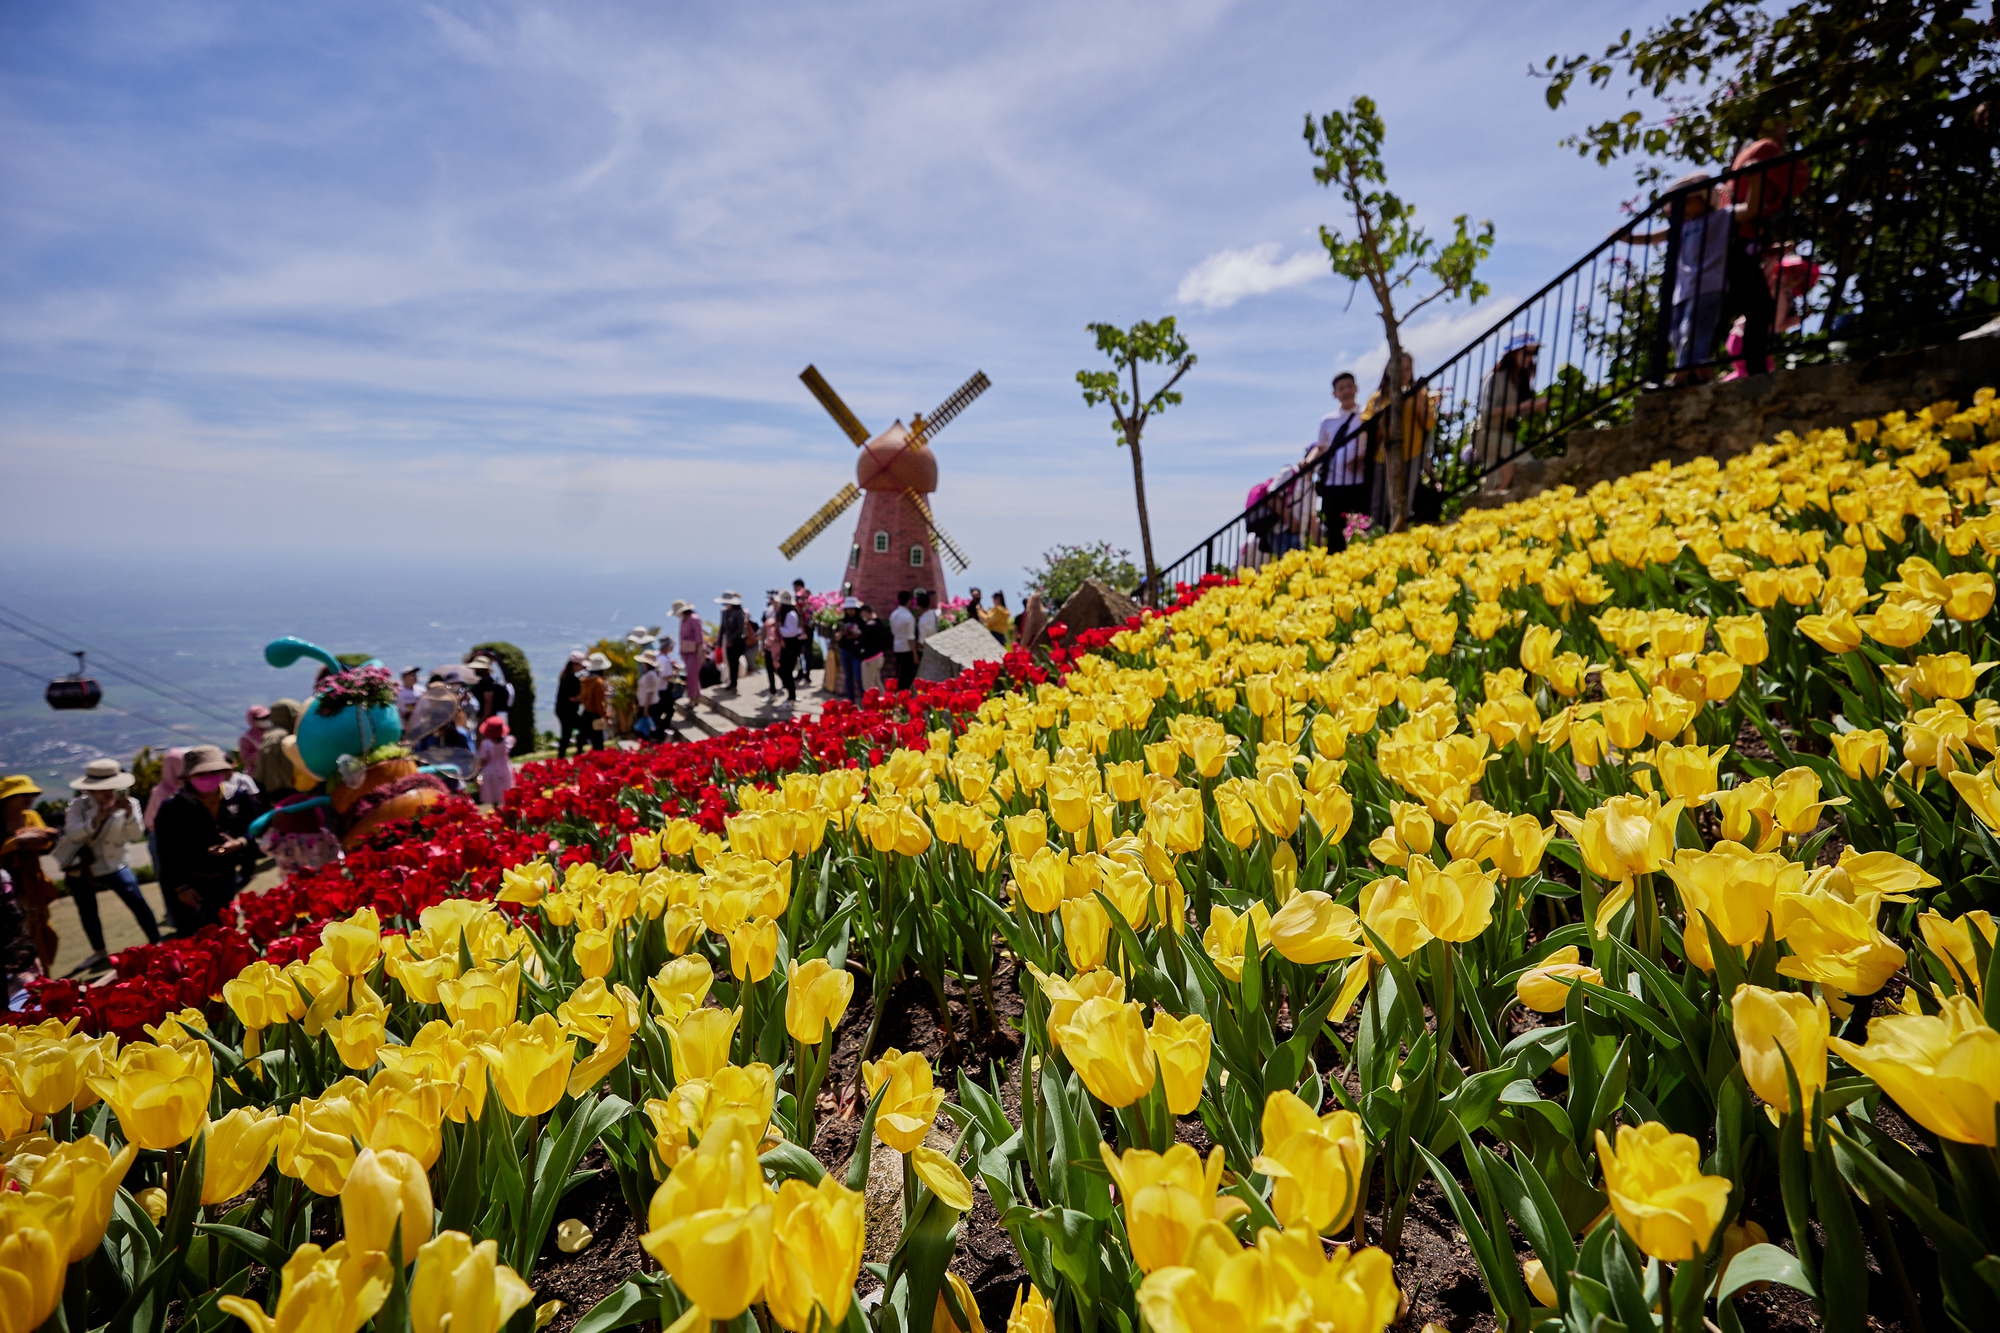 Đa trải nghiệm hấp dẫn, núi Bà Đen hút khách kỷ lục trong tháng Giêng - Ảnh 6.